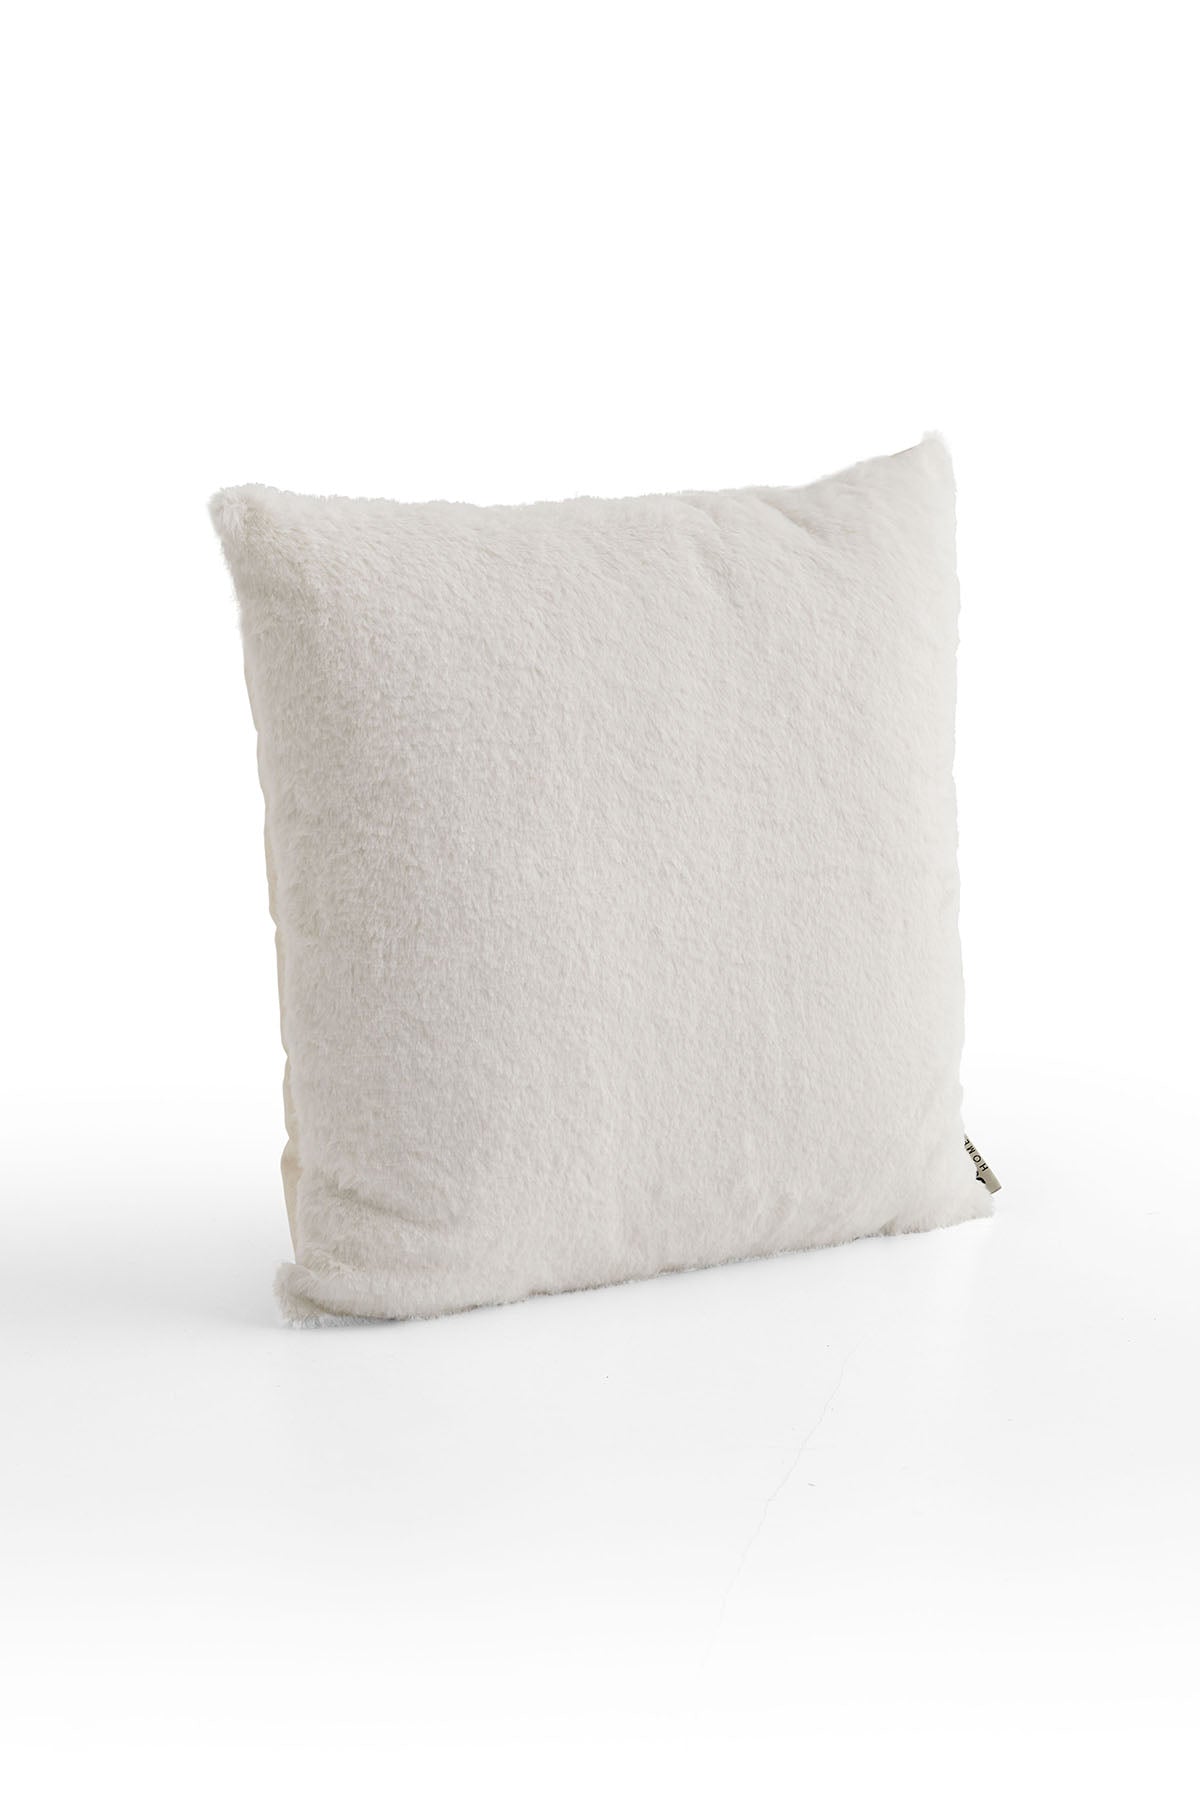 Plush Ecru Lace Pillow